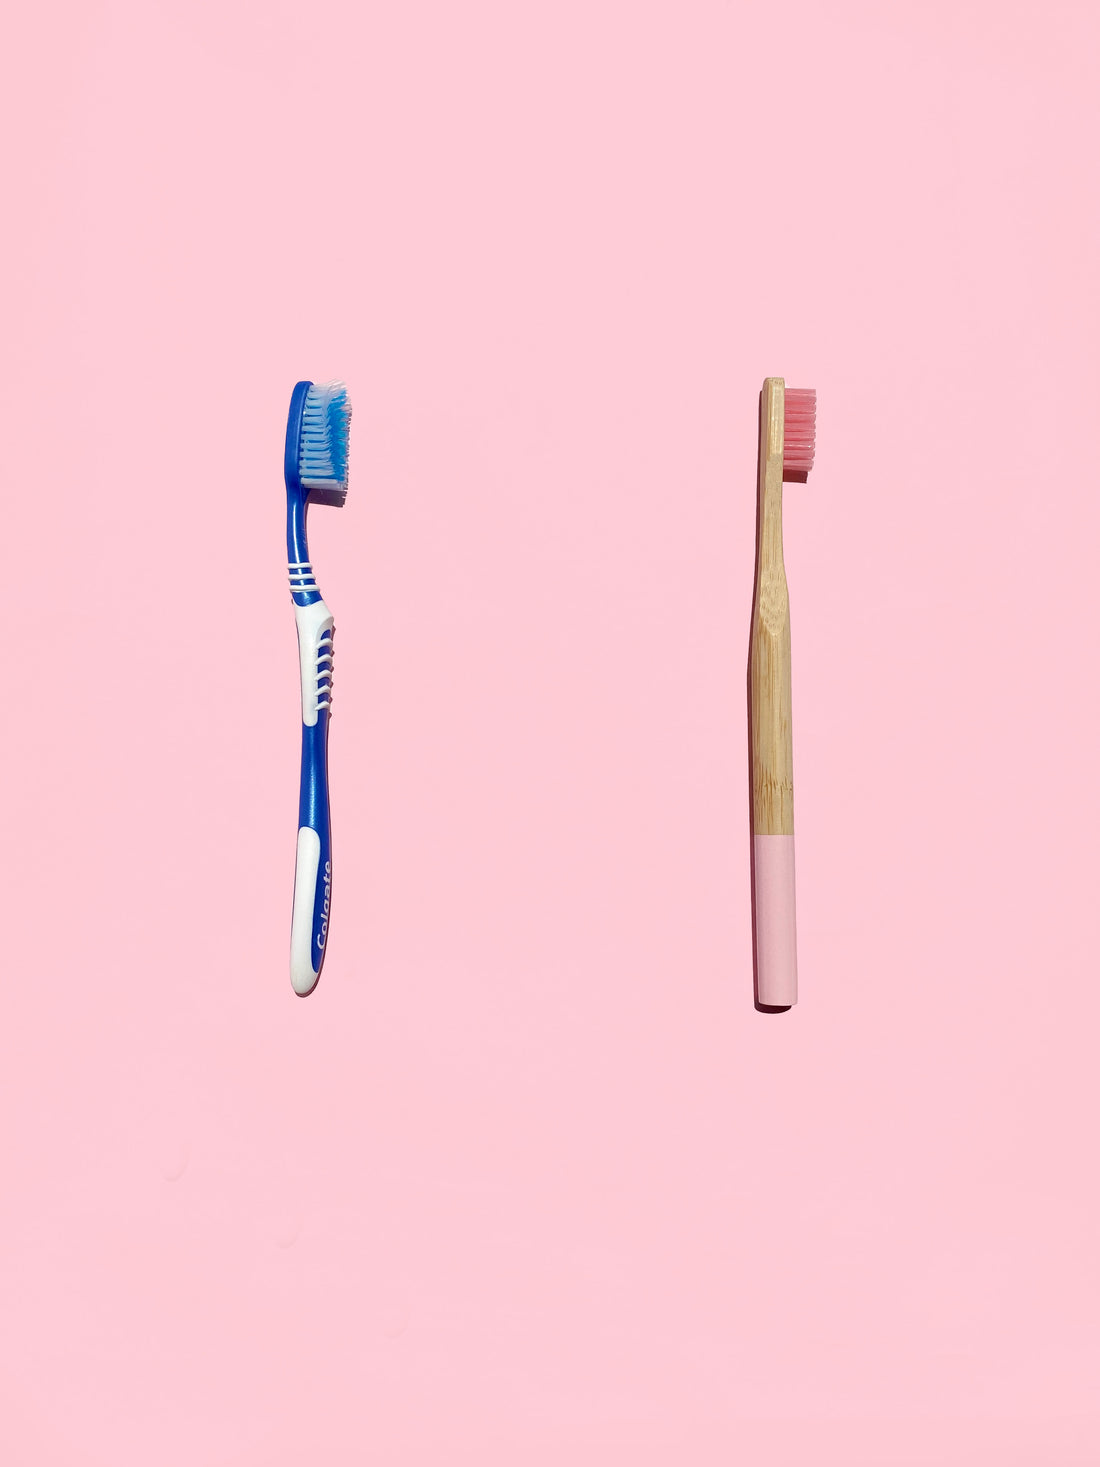 Cepillo dental de plástico vs cepillo dental de bambú